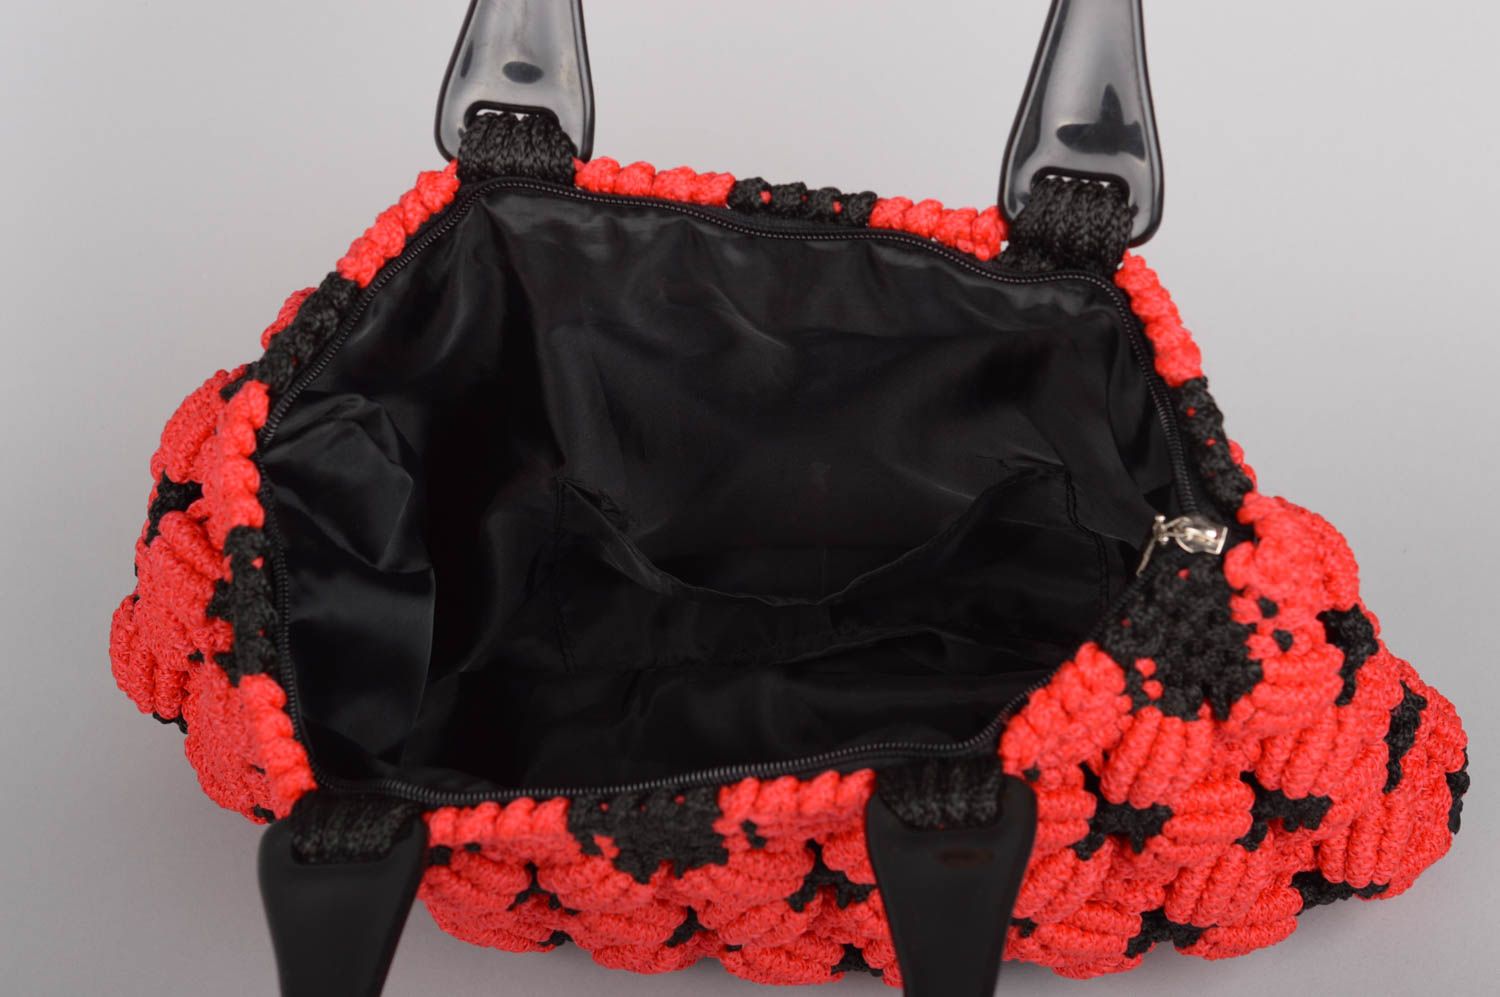 Designer Bags & Accessories